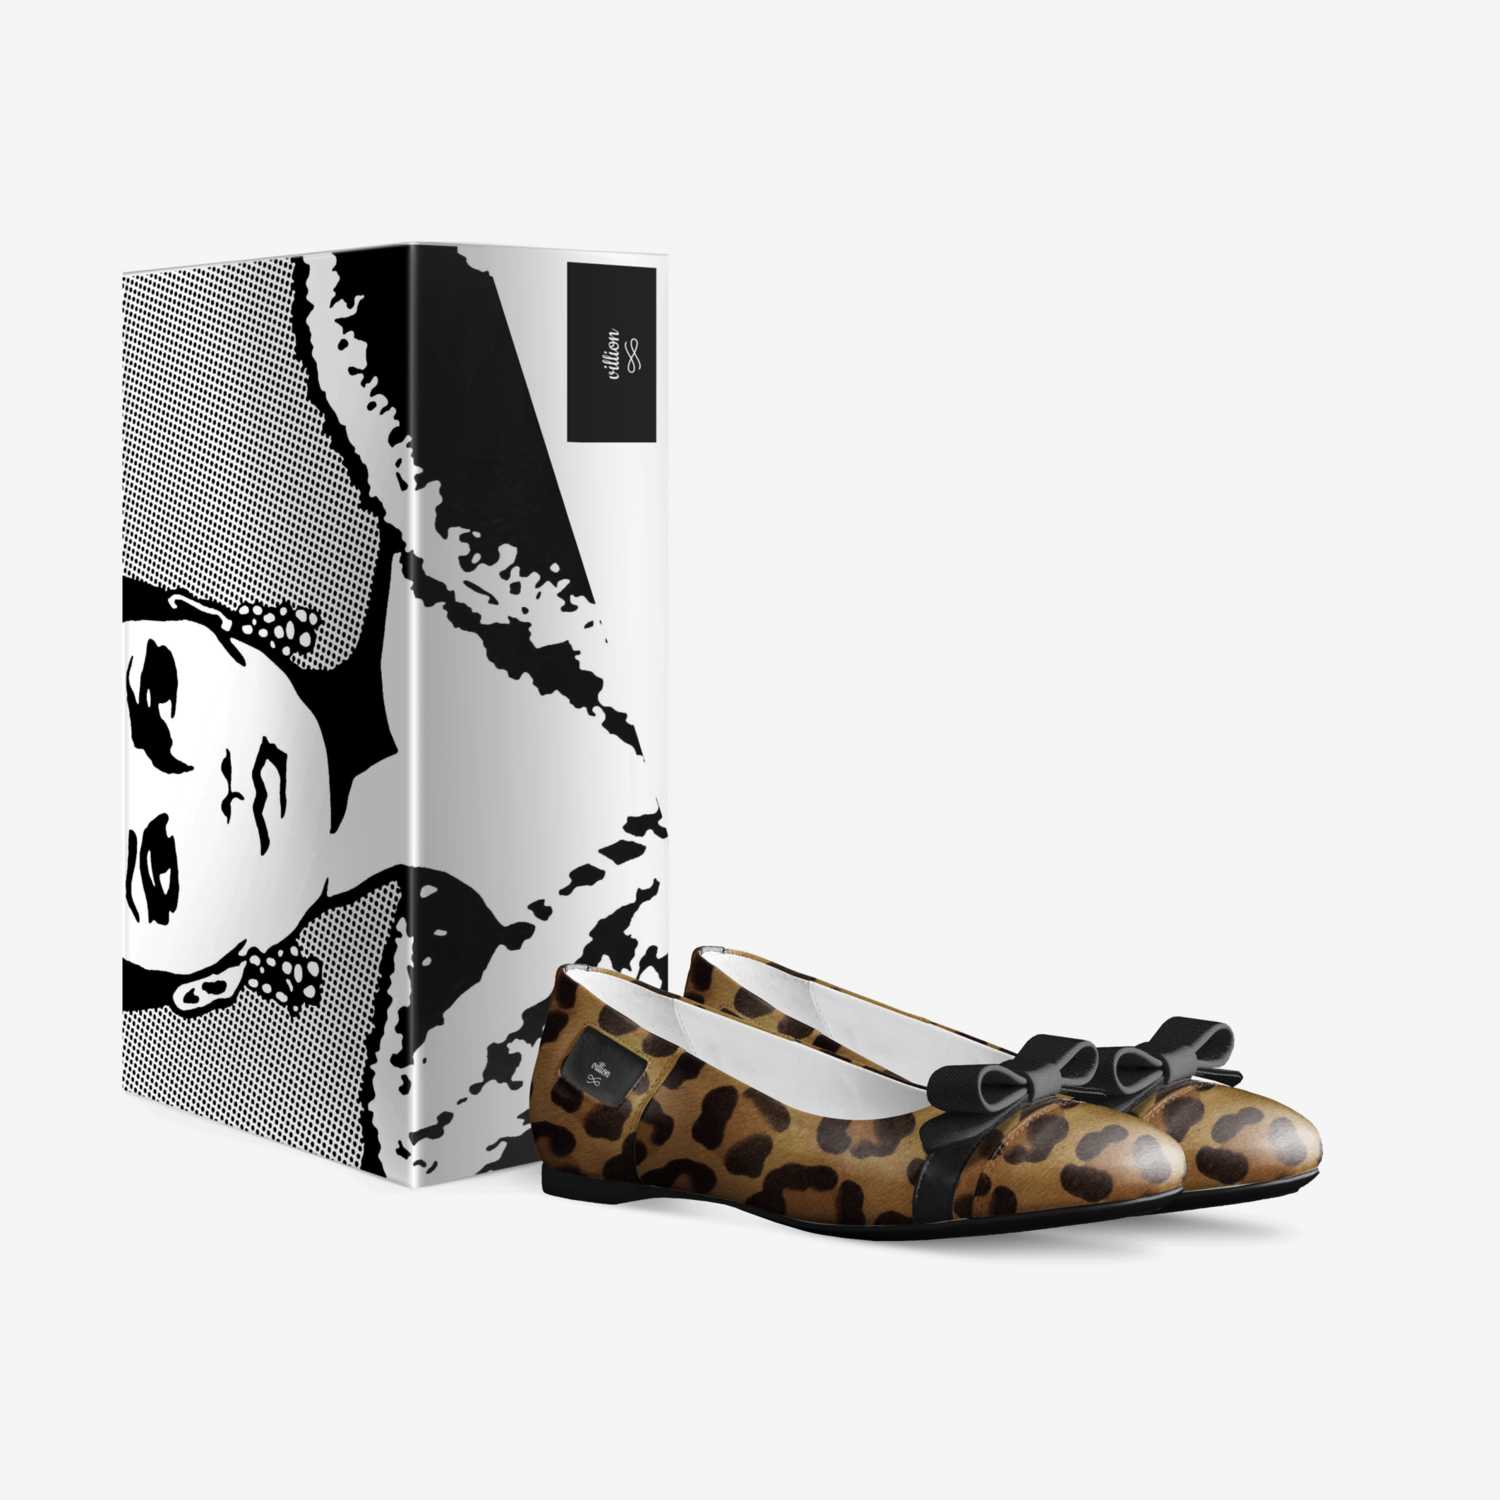 villion custom made in Italy shoes by Vugah Munang | Box view